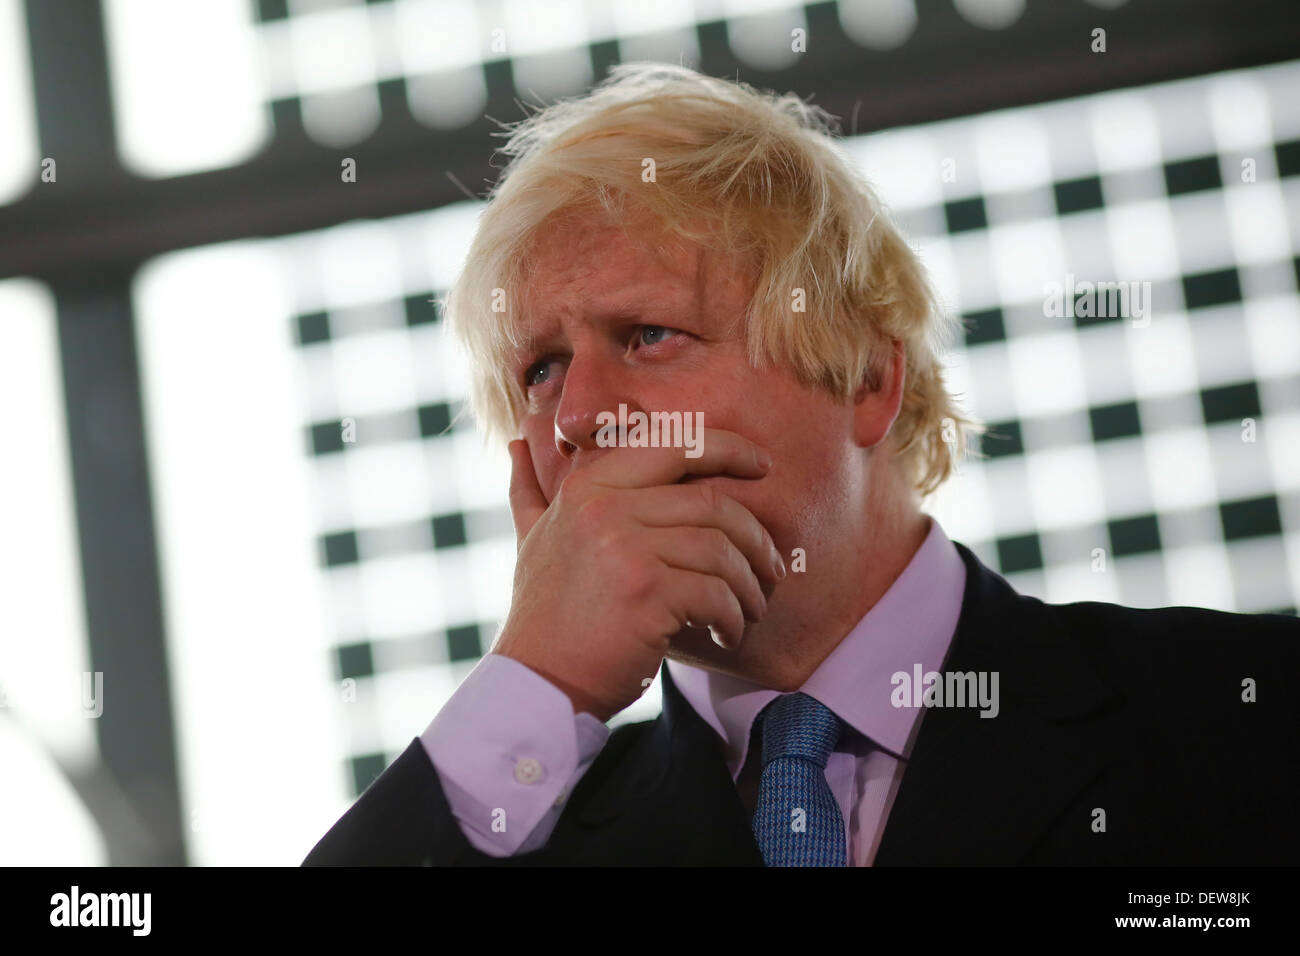 Le maire de Londres Boris Johnson, le 24 septembre 2013 Banque D'Images